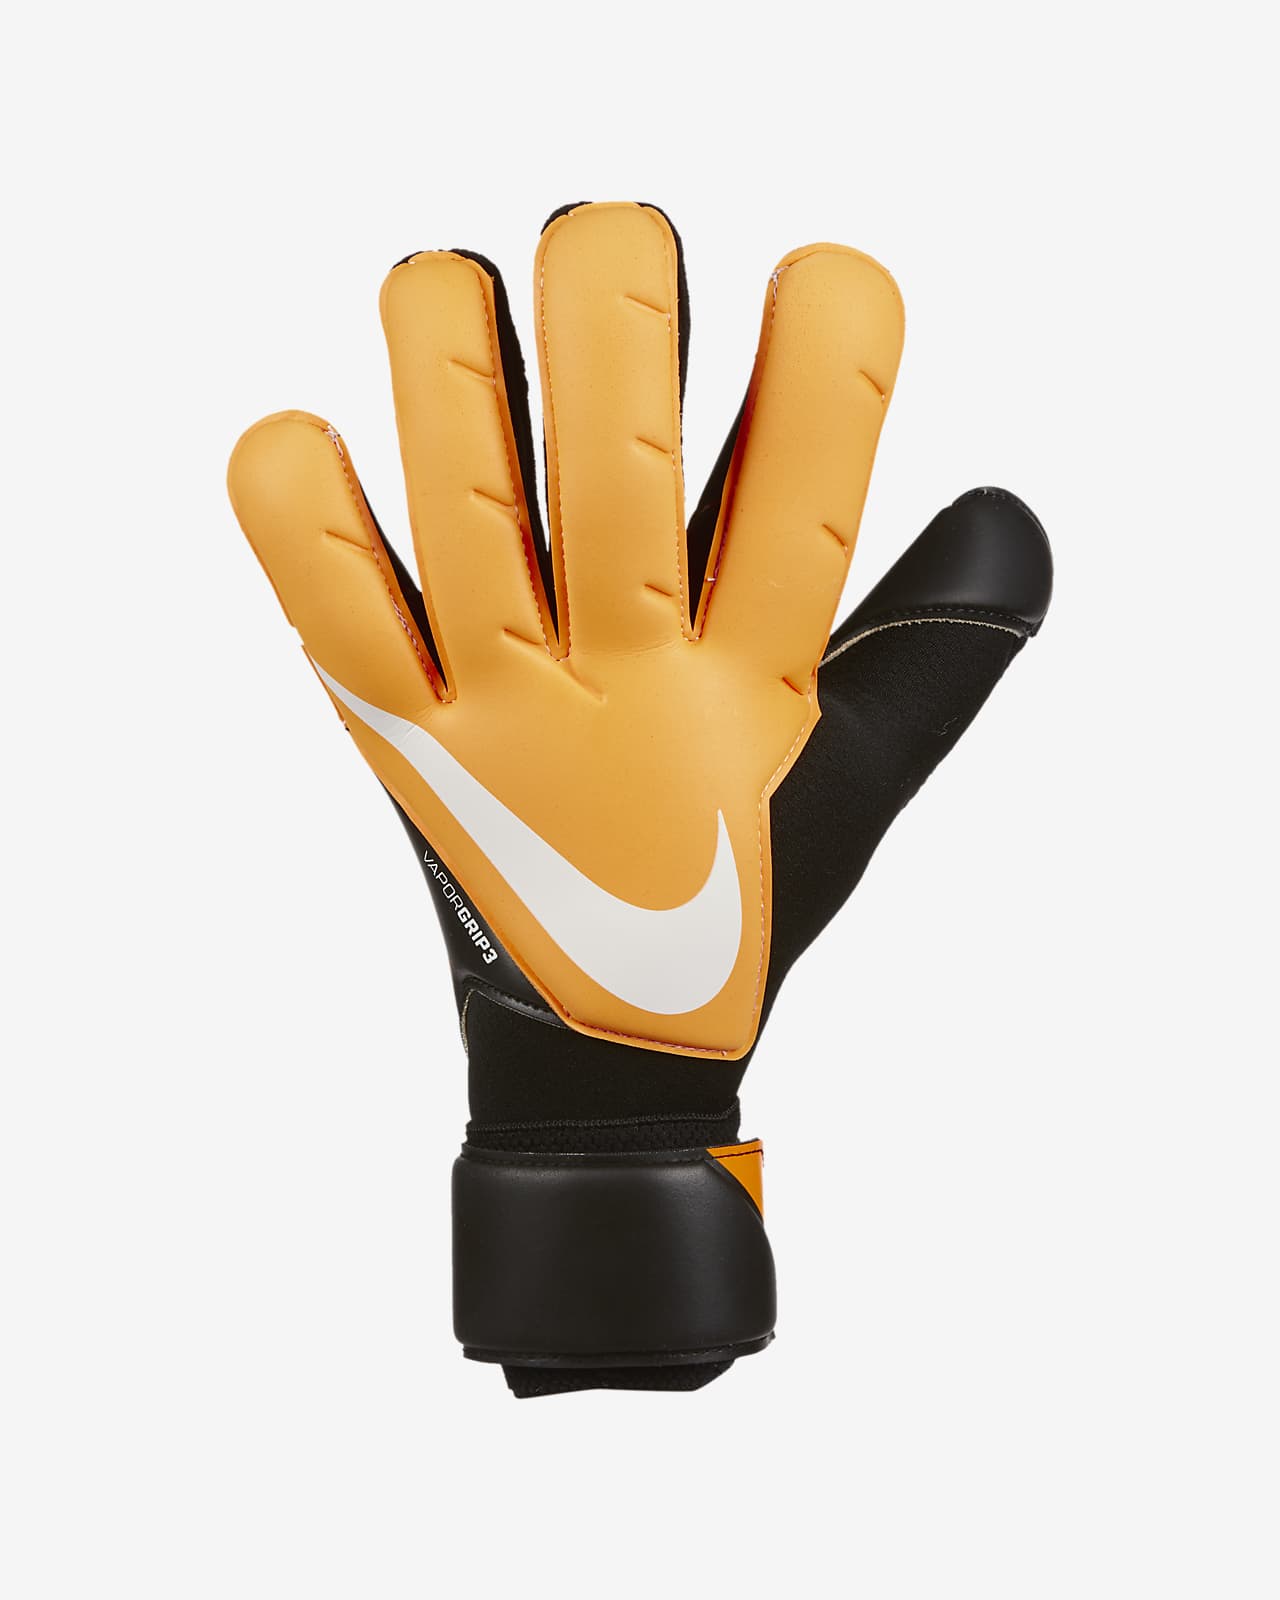 nike football gloves 2020